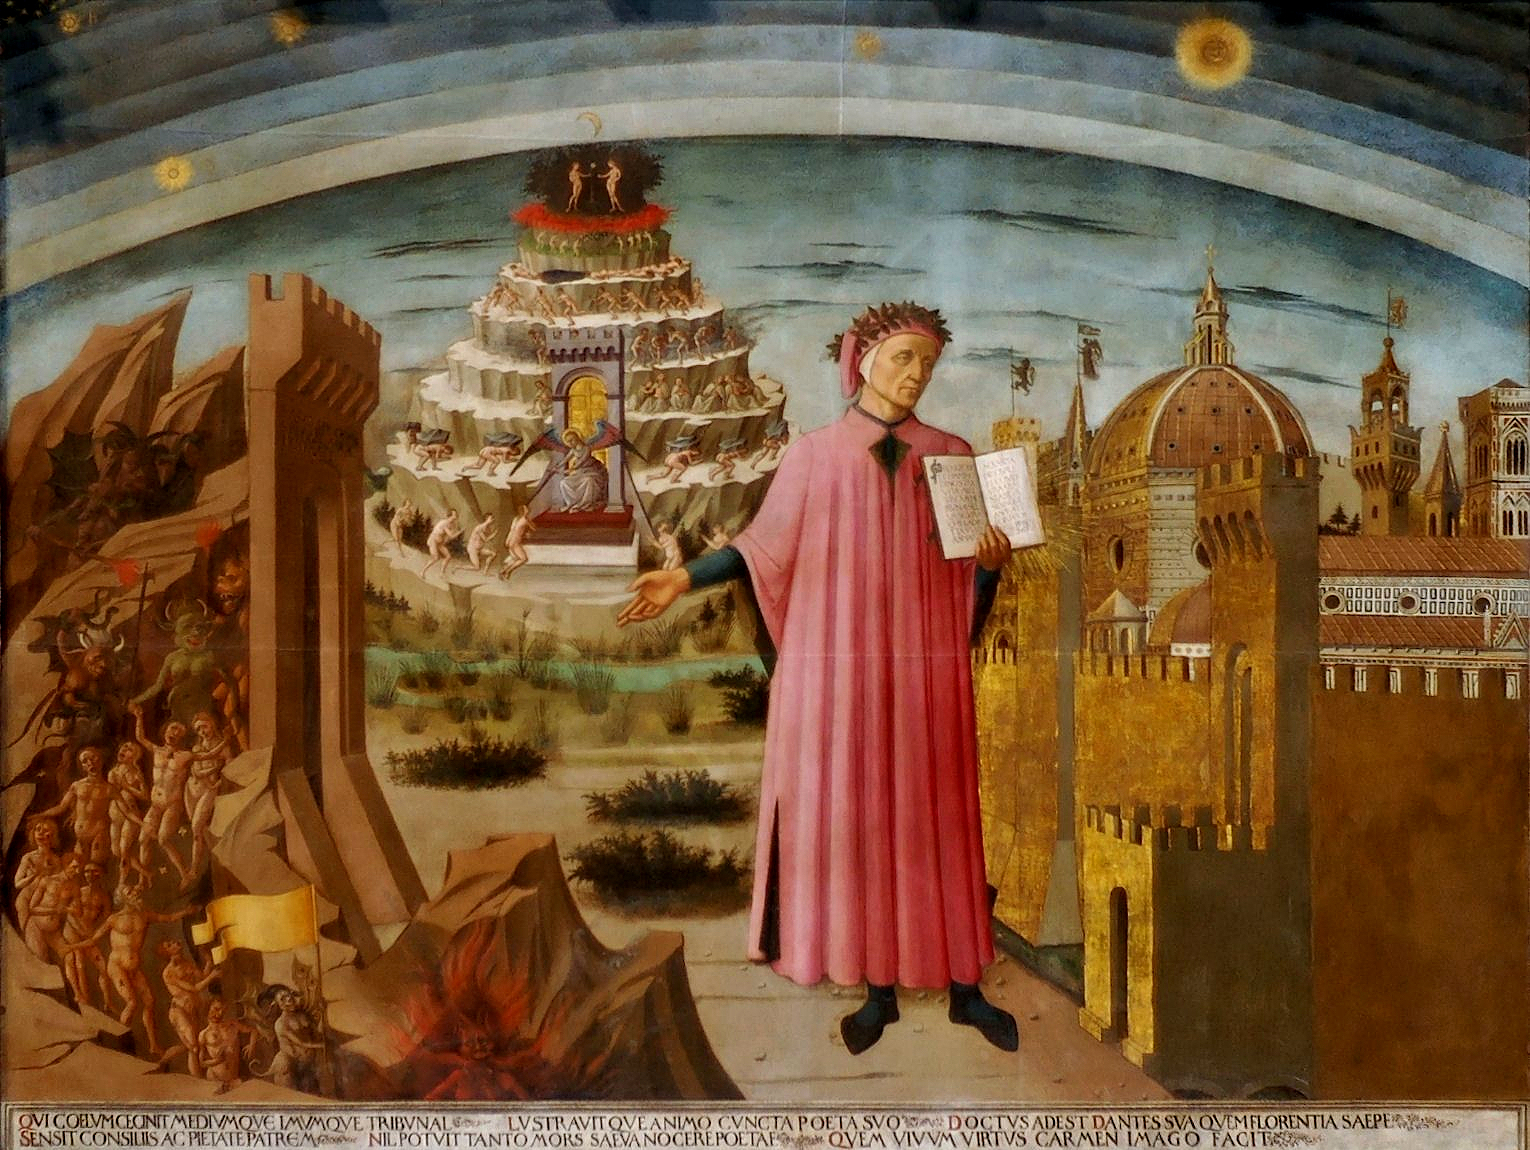 Dante Alighieri from Dante's Inferno